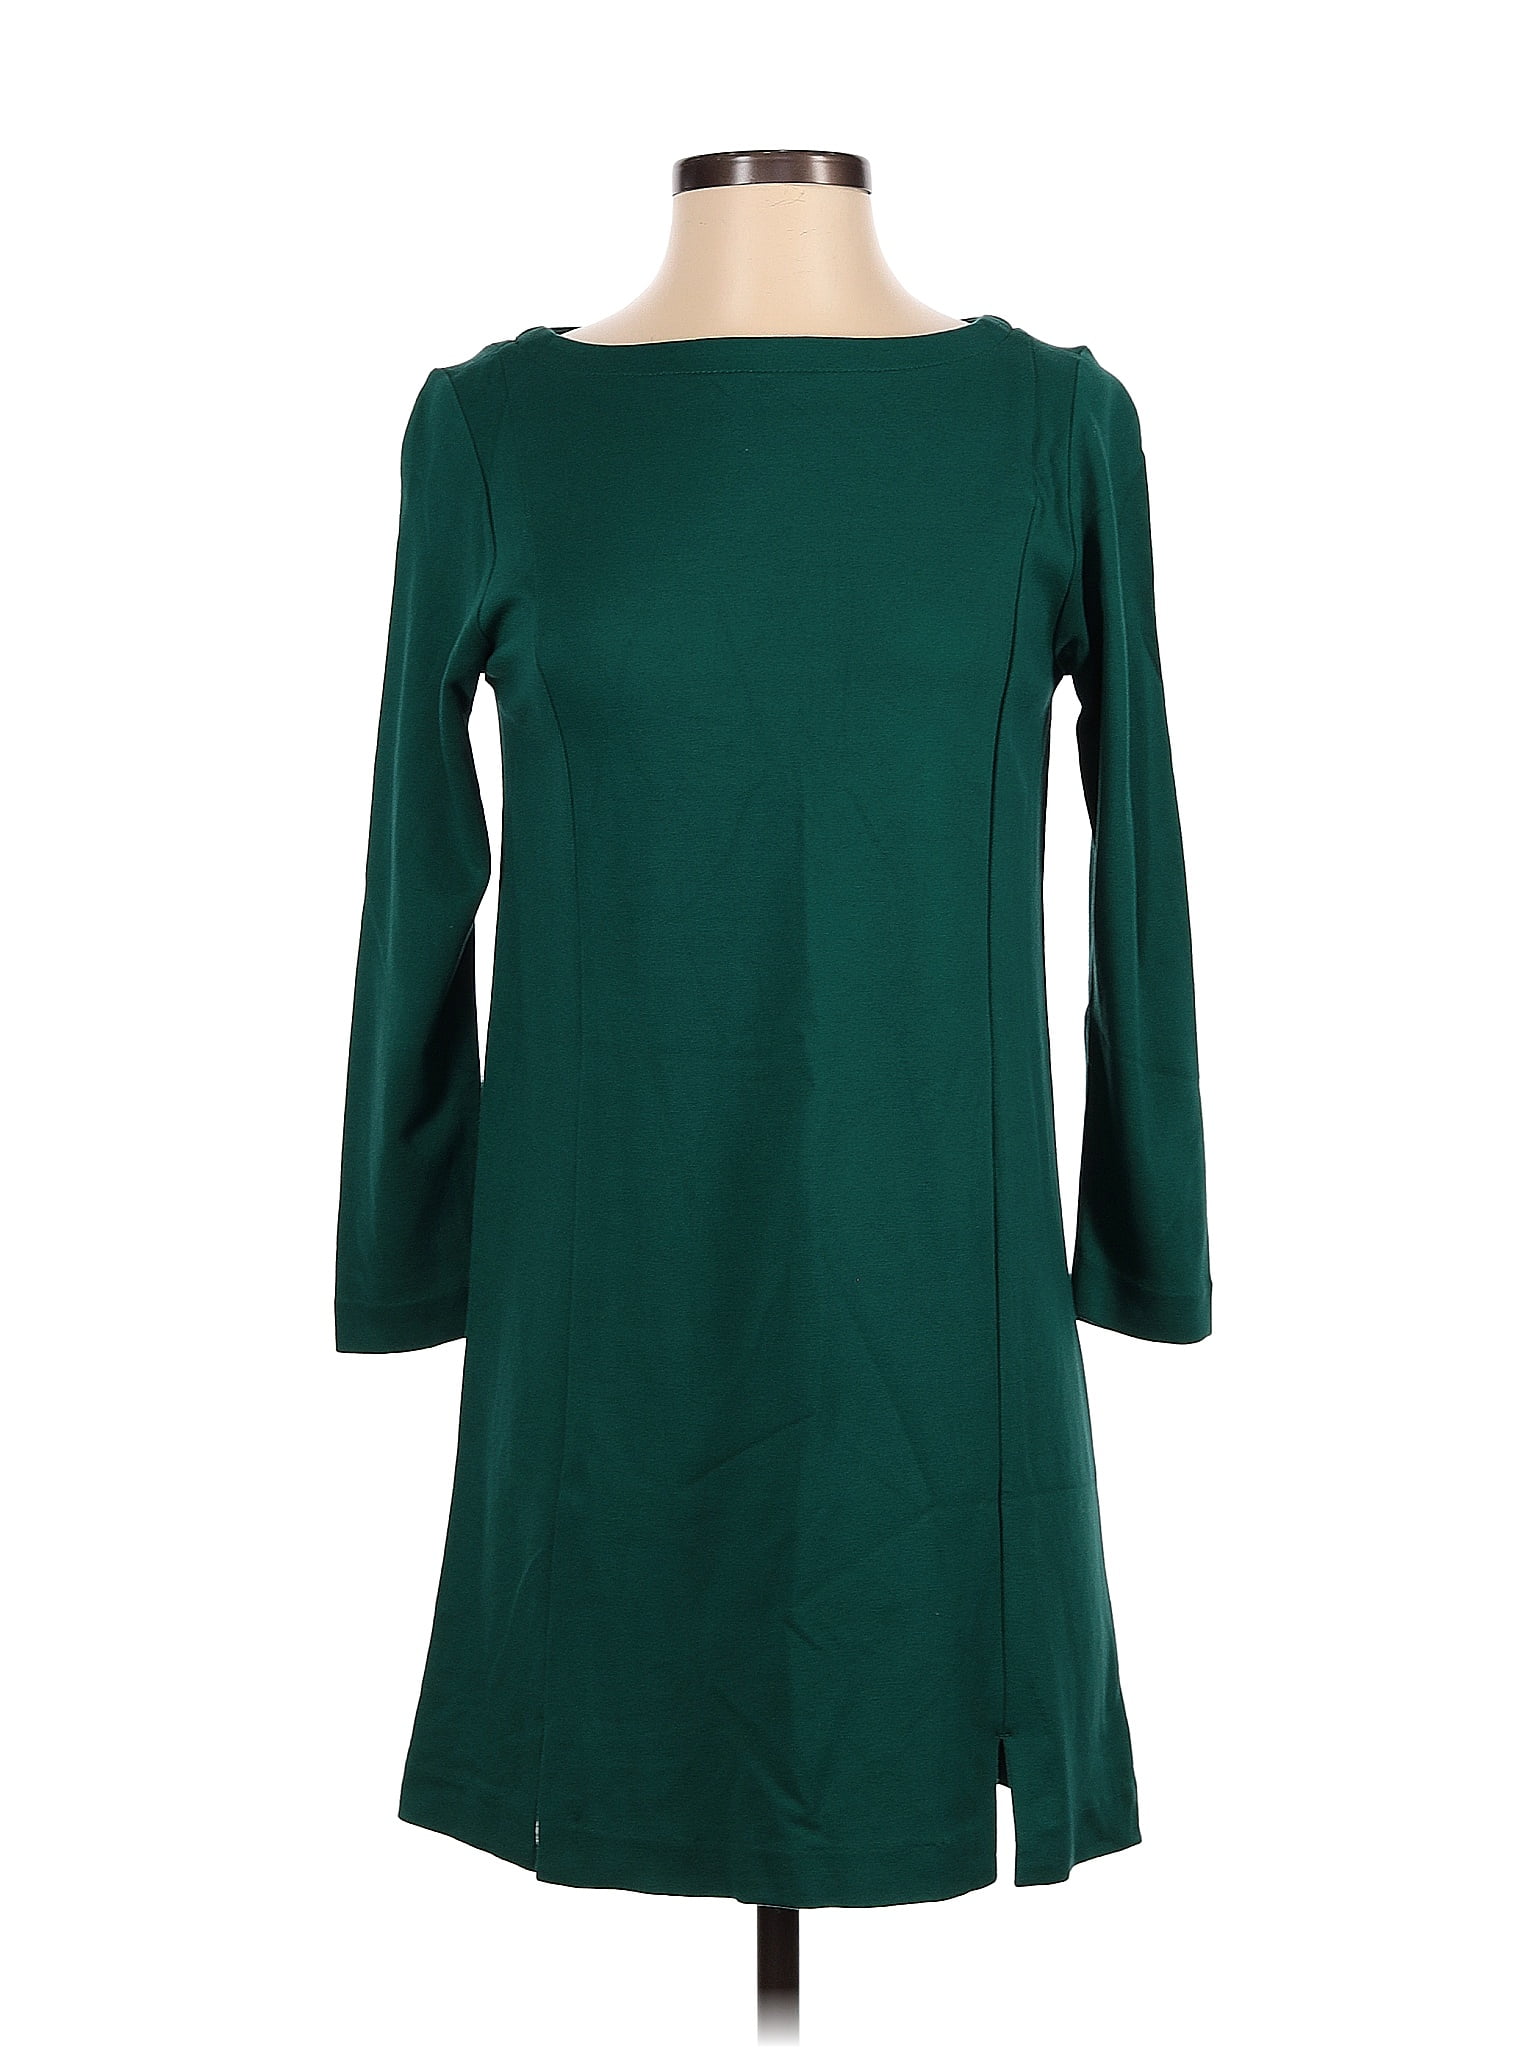 J.Jill Solid Green Casual Dress Size XS - 68% off | thredUP